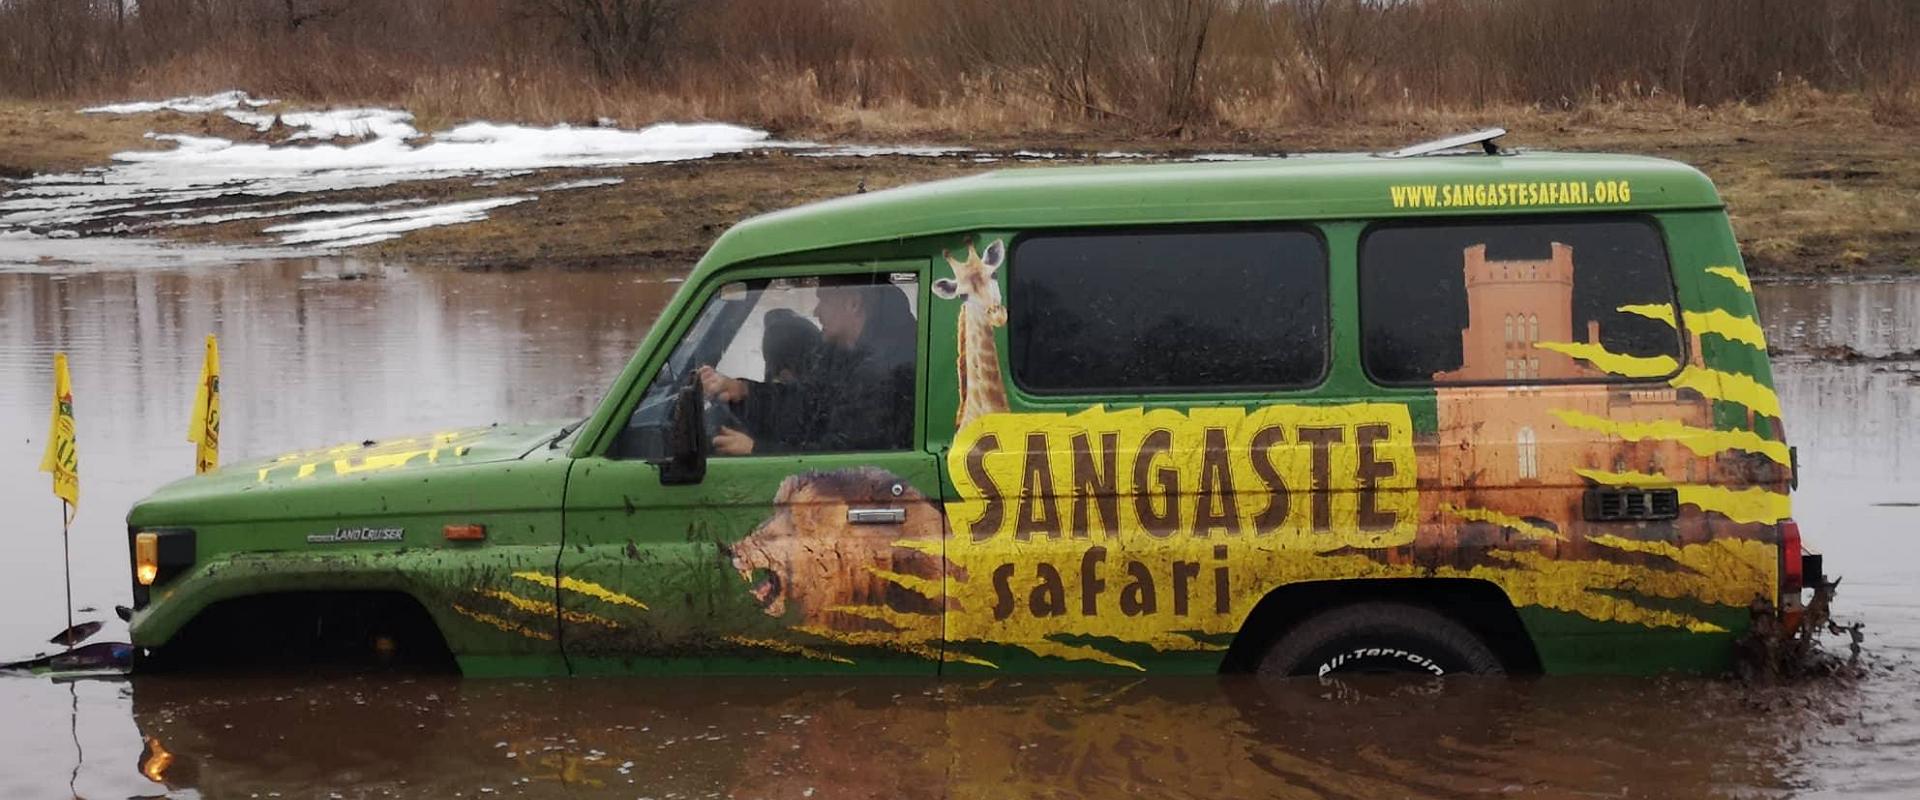 Sangaste Safari